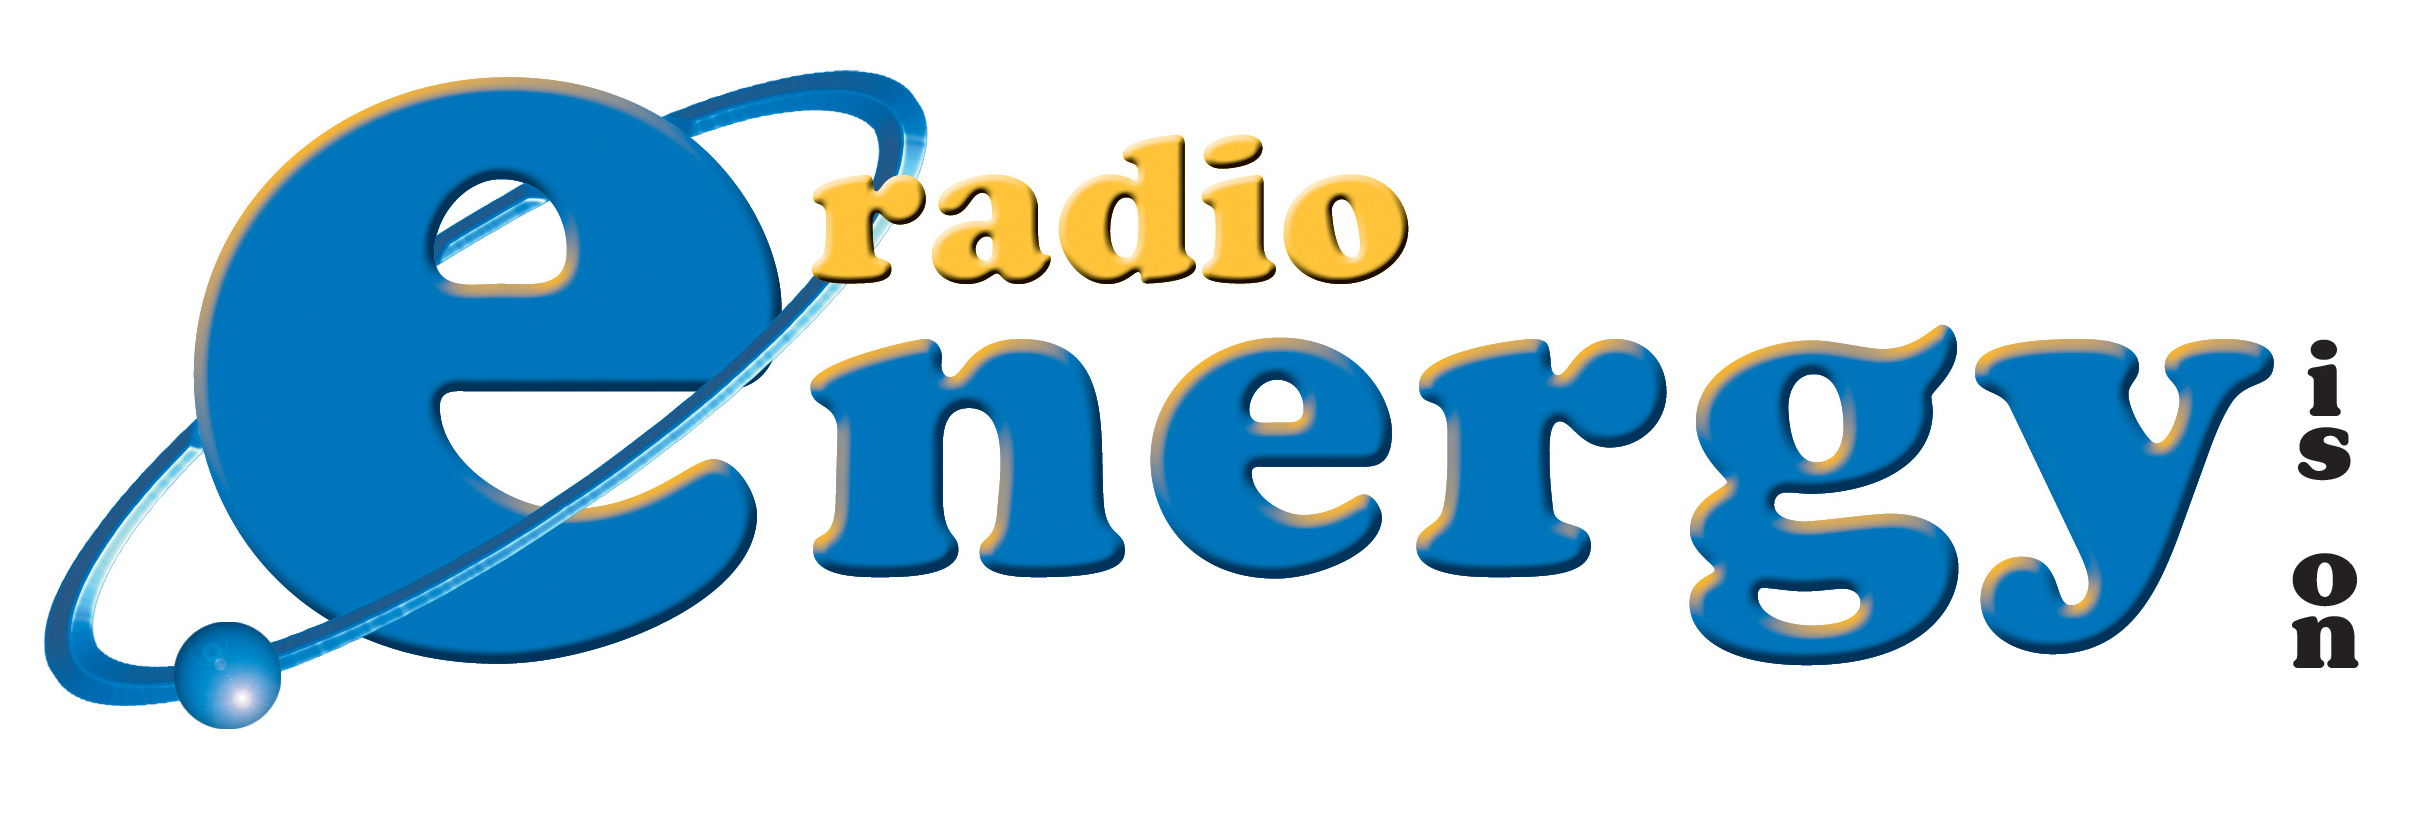 Clicca qui per ascoltare Radio Energy.